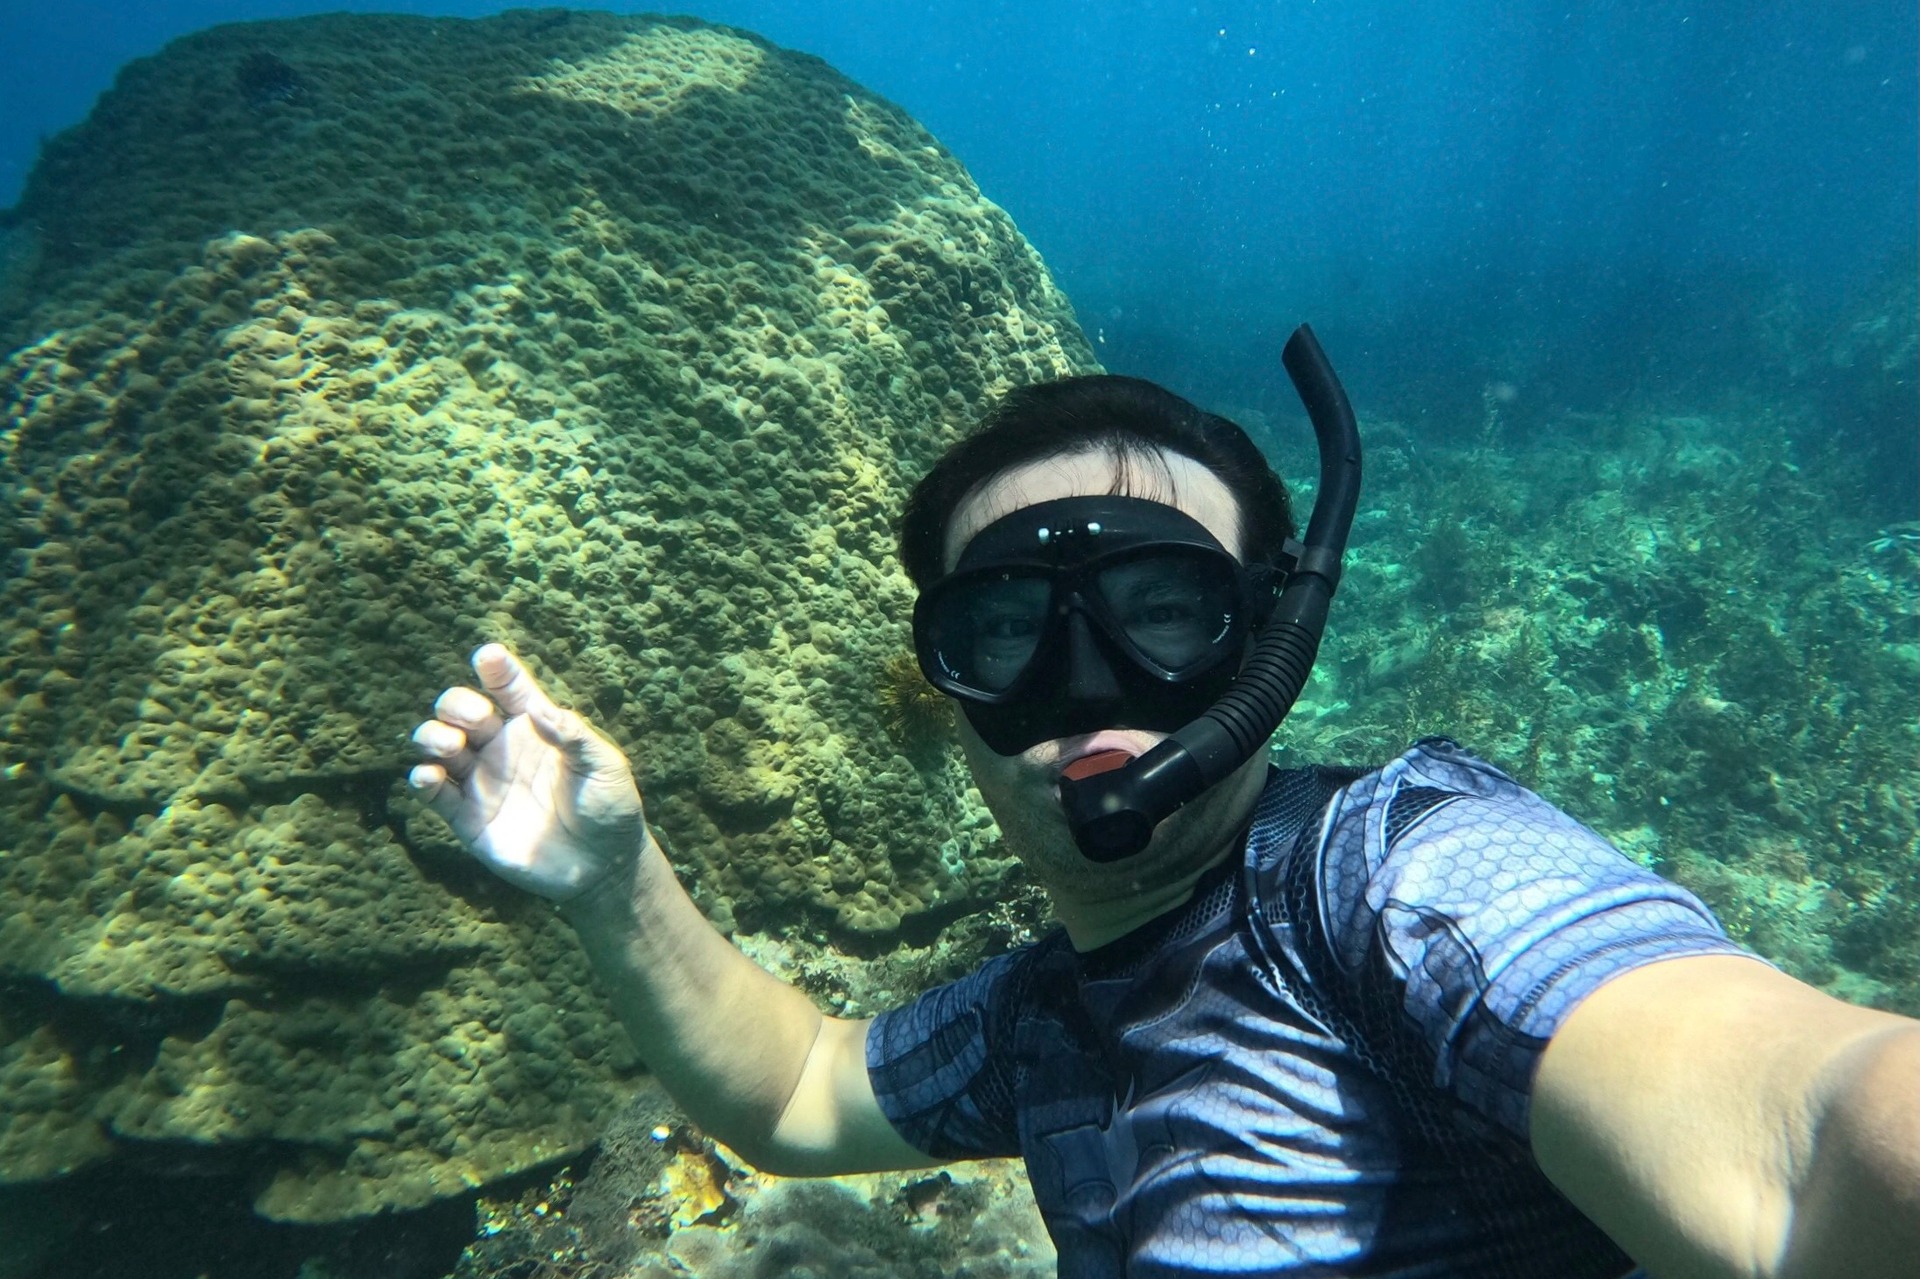 Ngỡ ngàng trước vẻ đẹp rạn san hô, sinh vật dưới đáy biển Đà Nẵng - Ảnh 11.